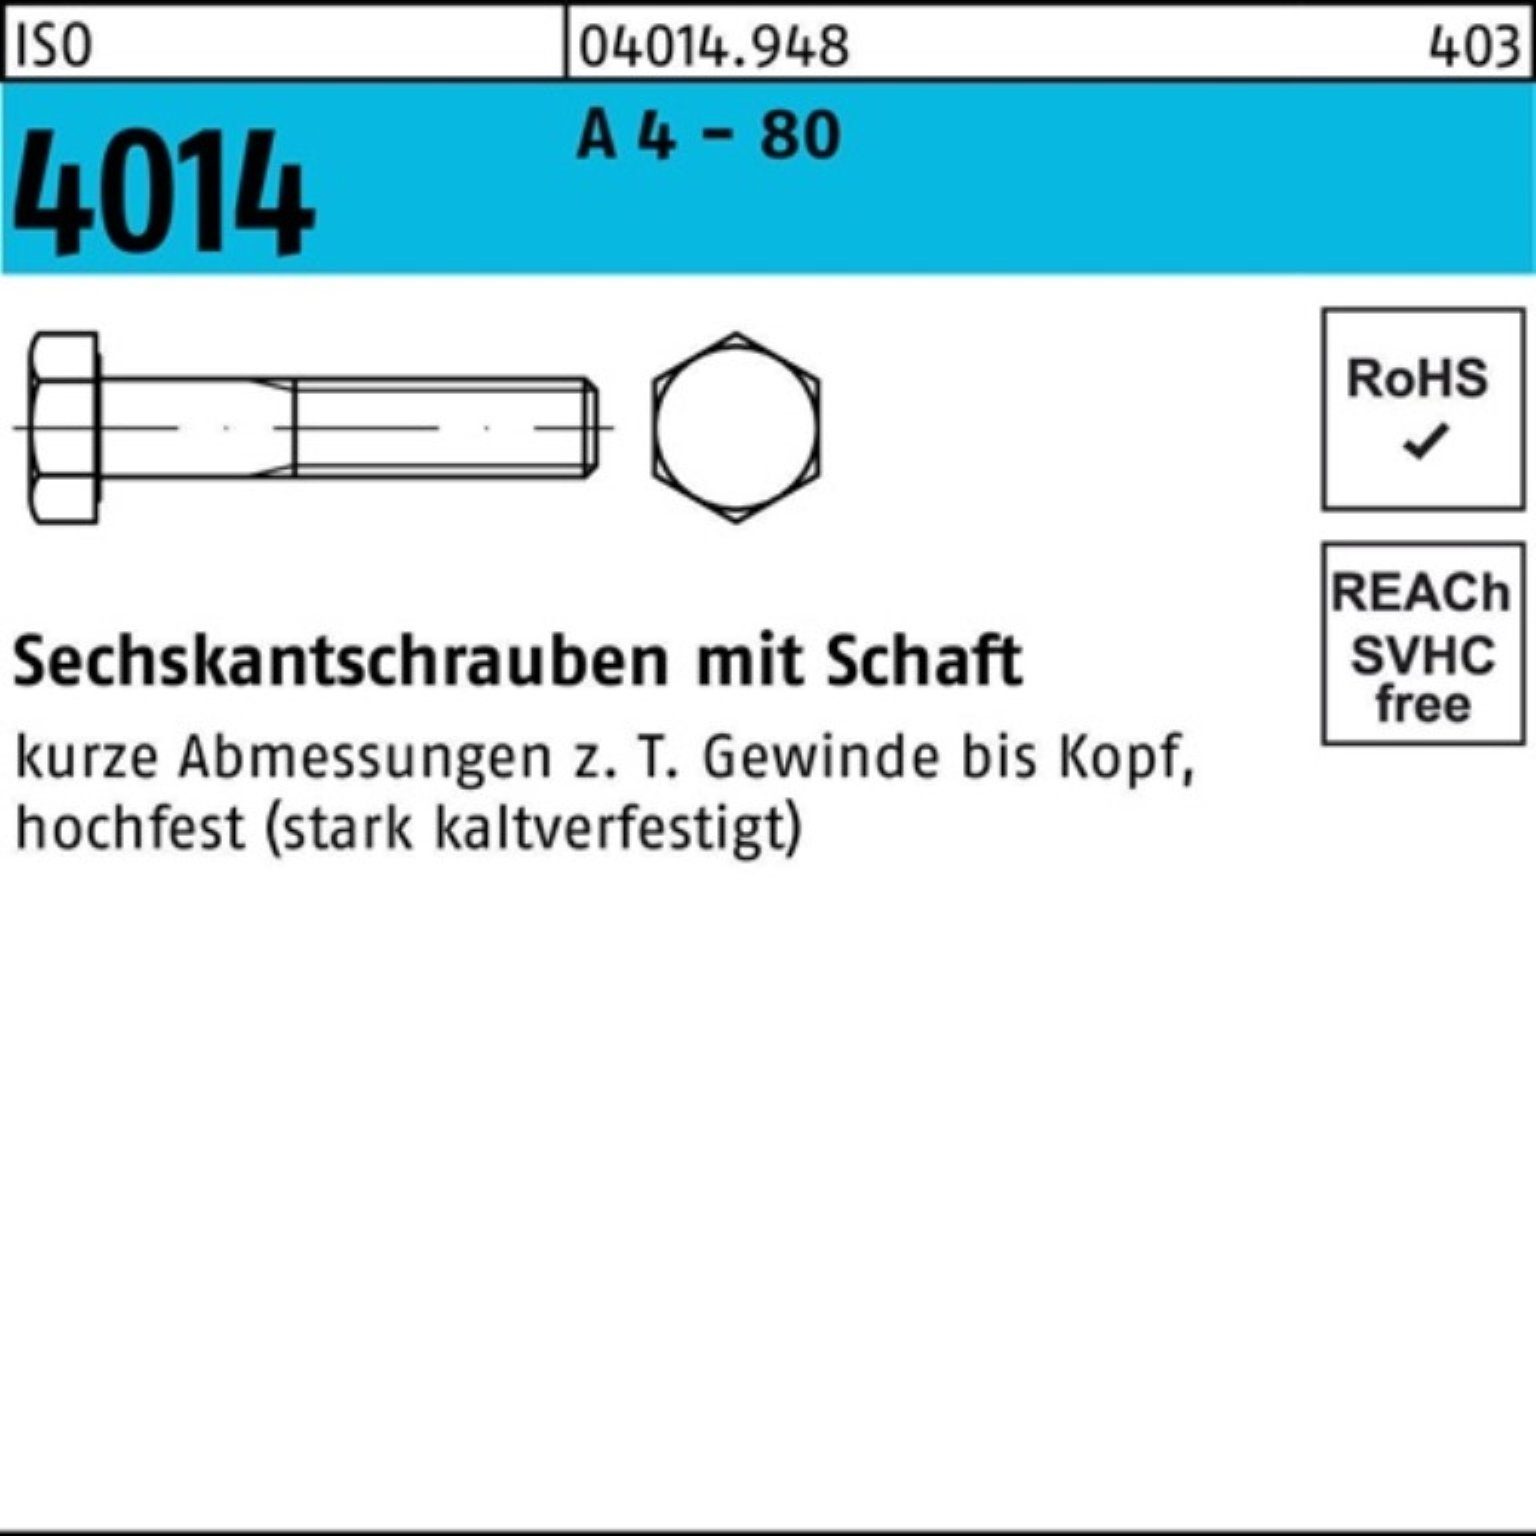 A Stüc 90 Sechskantschraube 50 ISO Pack 4014 100er 80 Sechskantschraube 4 Schaft - Bufab M10x